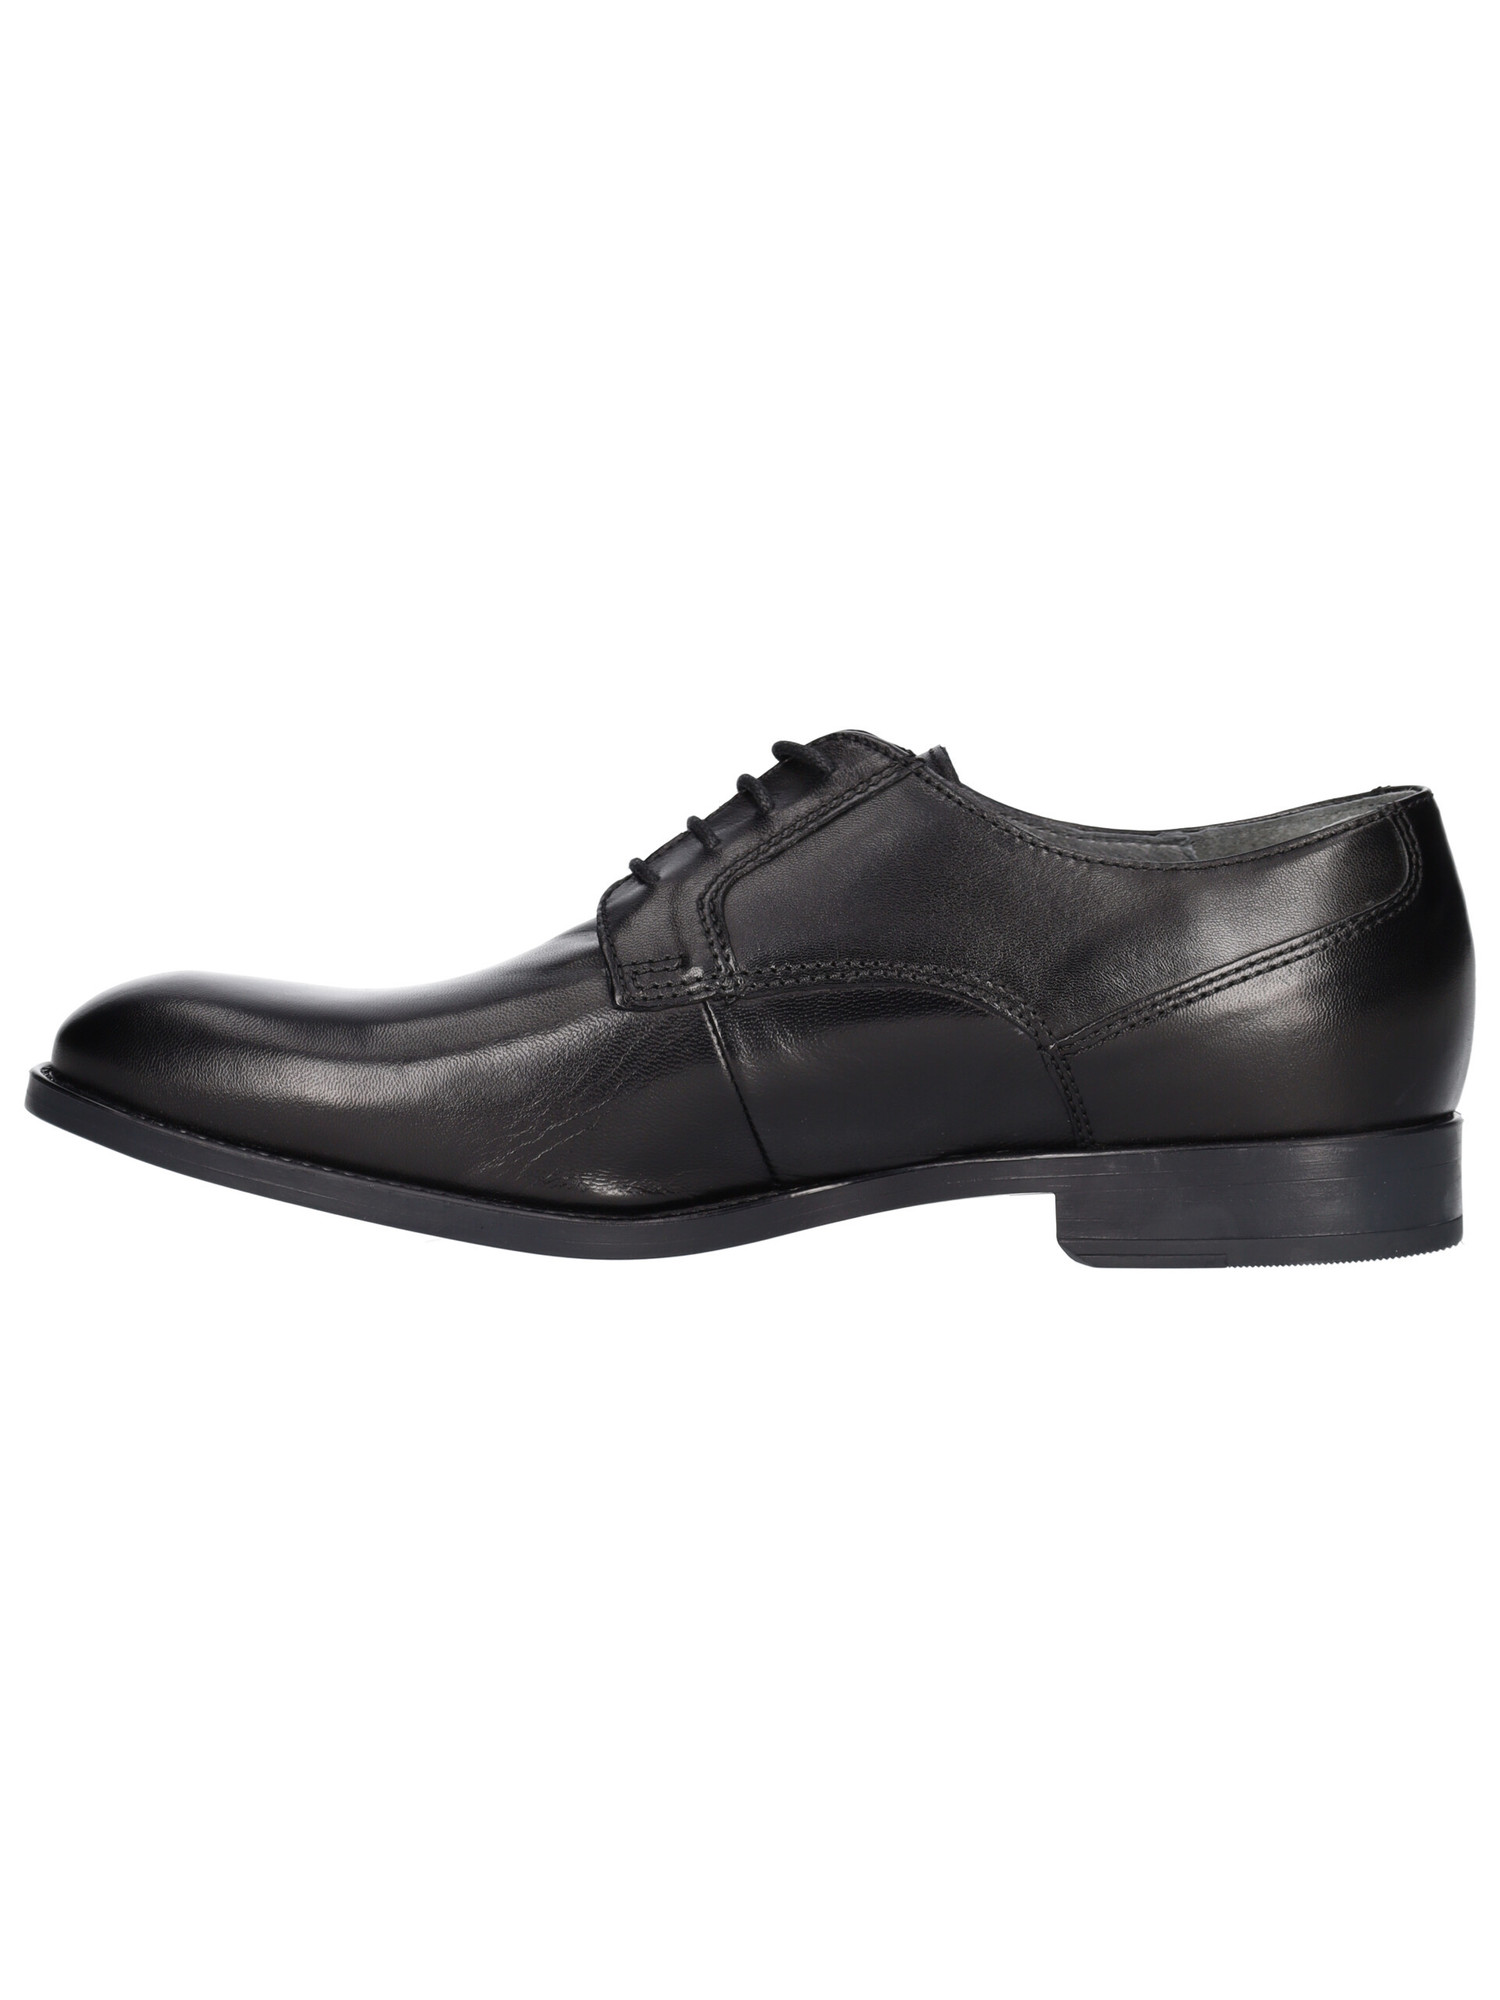 scarpa-elegante-valleverde-da-uomo-nera-40c68c